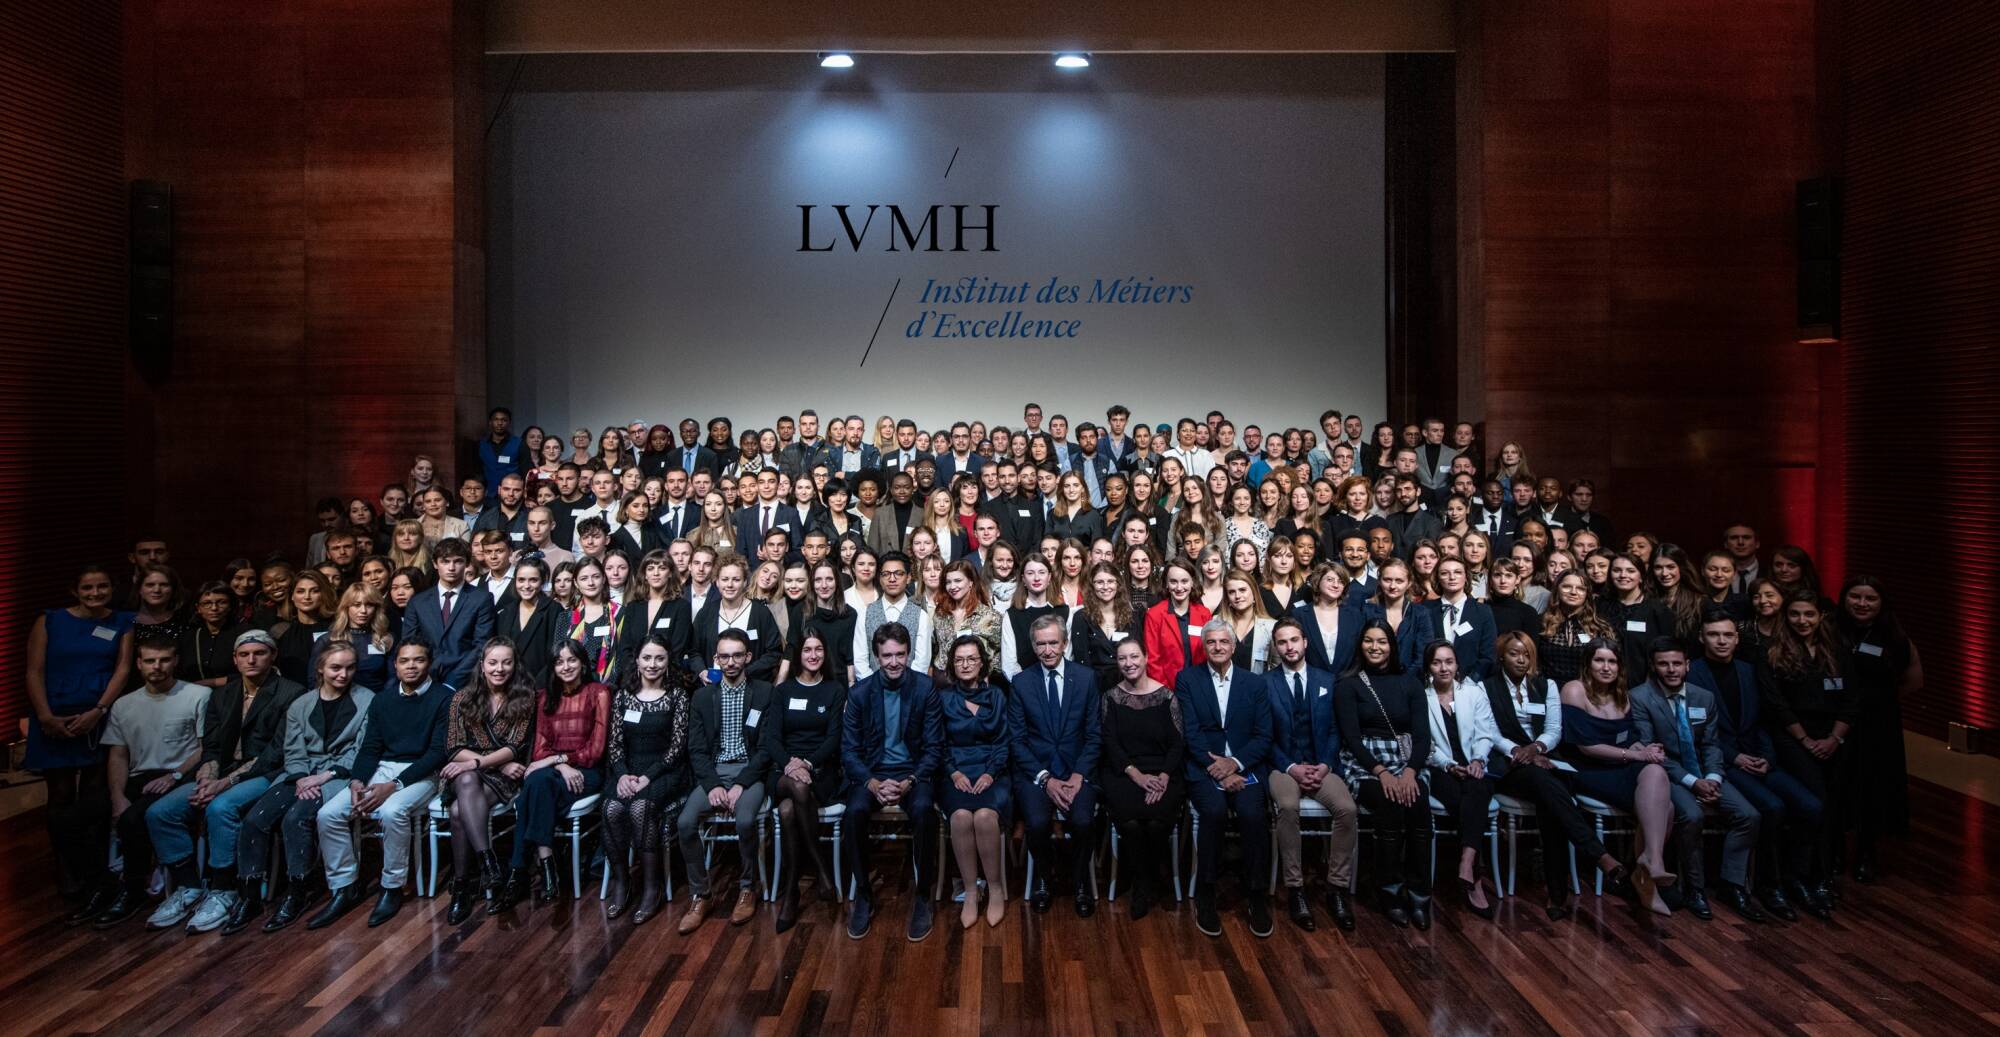 LVMH Institut des Métiers d'Excellence surpasses 800 apprentices